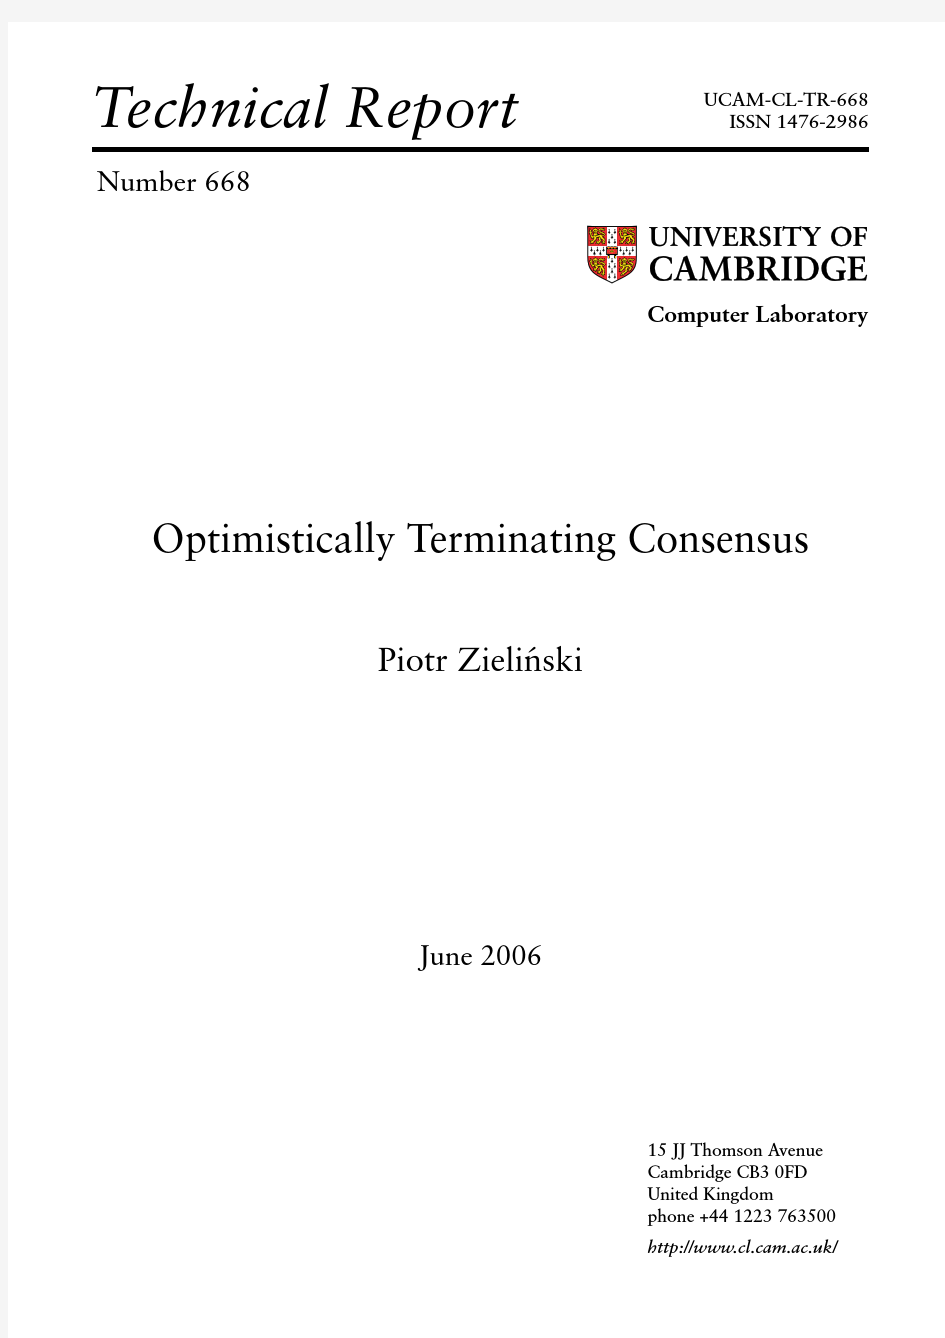 Optimistically terminating consensus